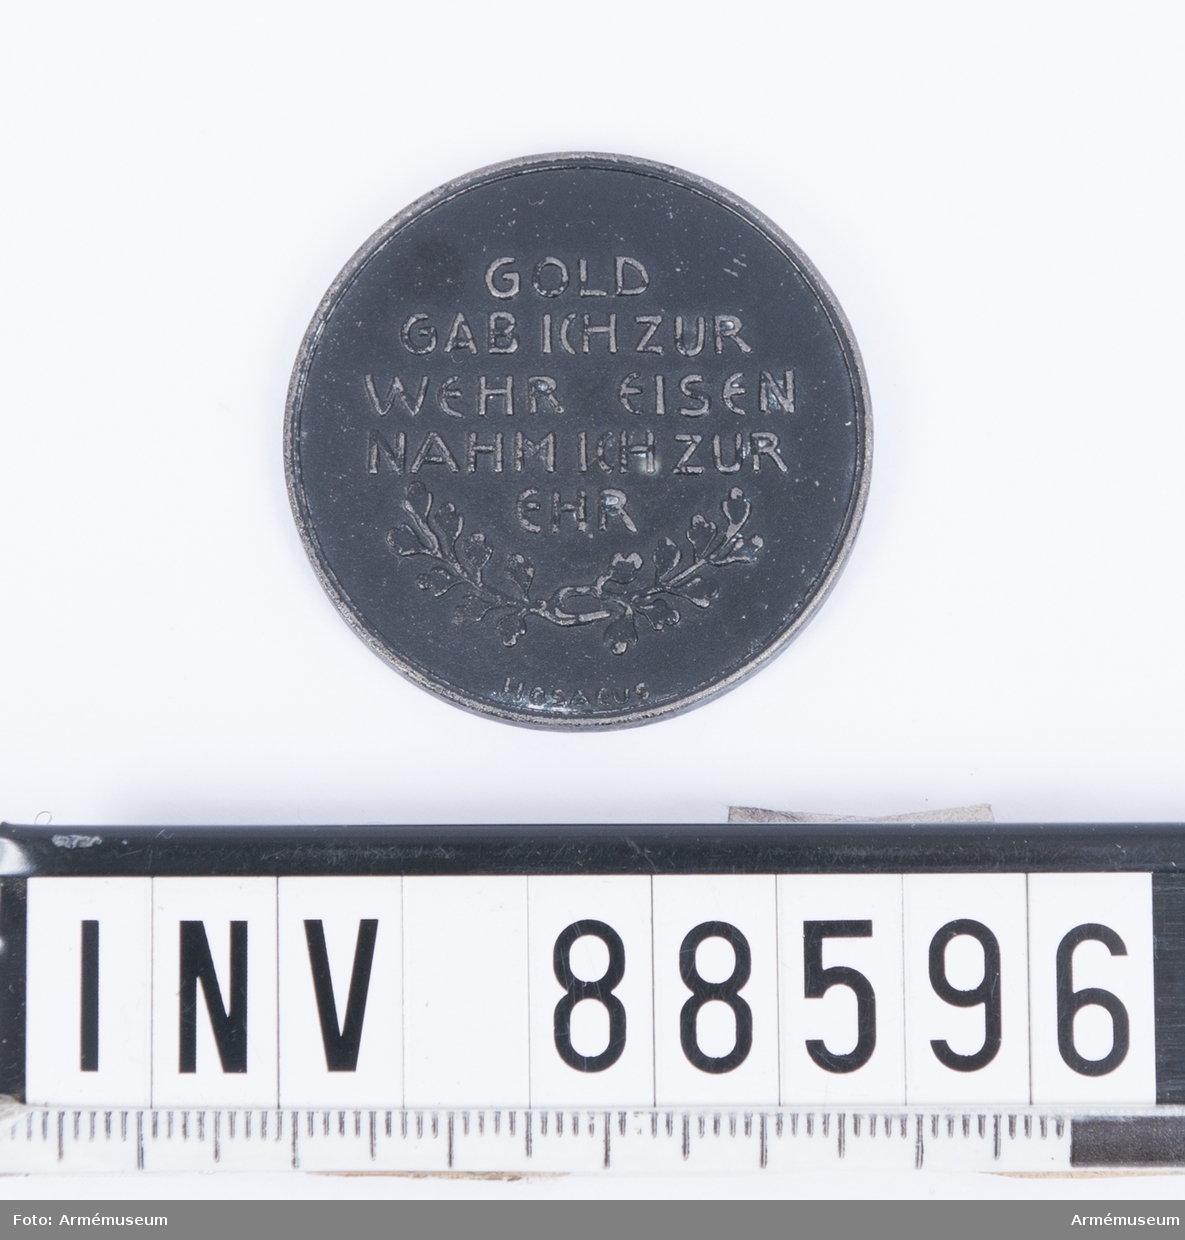 Medalj med texten "IN EISERNER ZEIT 1916", på frånsidan "GOLD GAB ICH ZUR WEHR EISEN NAHM ICH ZUR EHR".